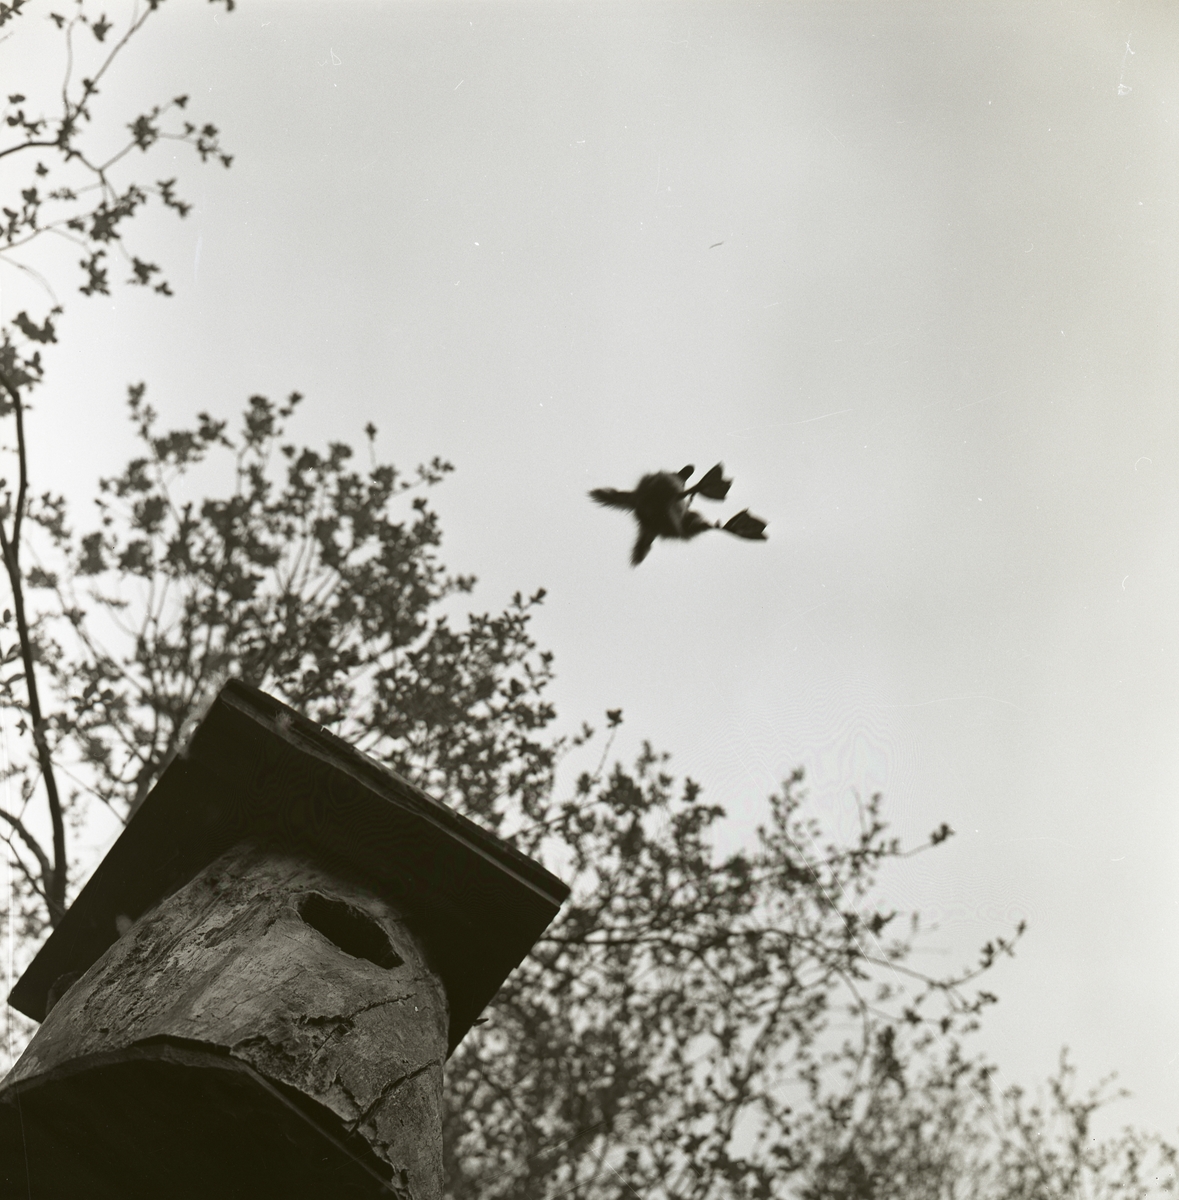 Från ett grodperspektiv är en knipunge fångad när den hoppar ut från en fågelholk, maj 1961.